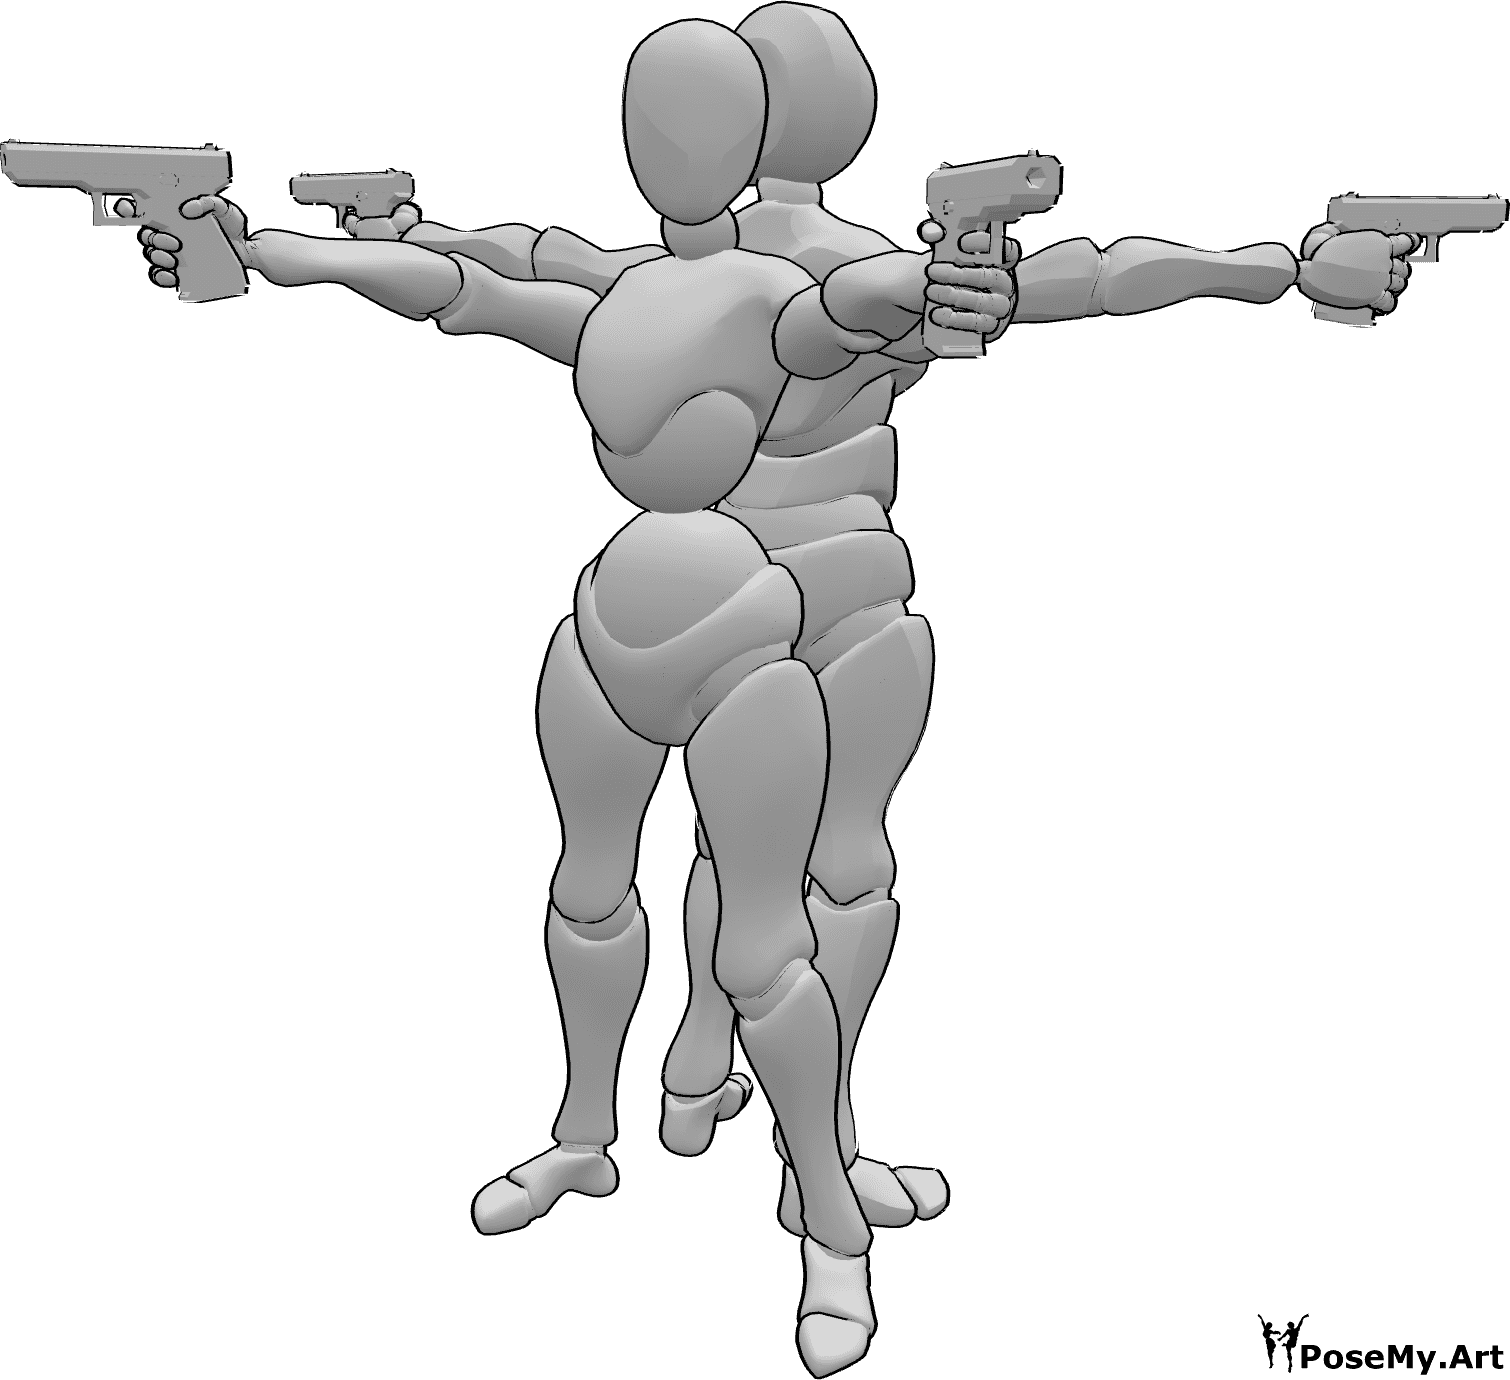 Riferimento alle pose- Posa delle pistole femminile e maschile - Femmina e maschio schiena contro schiena con armi in posa